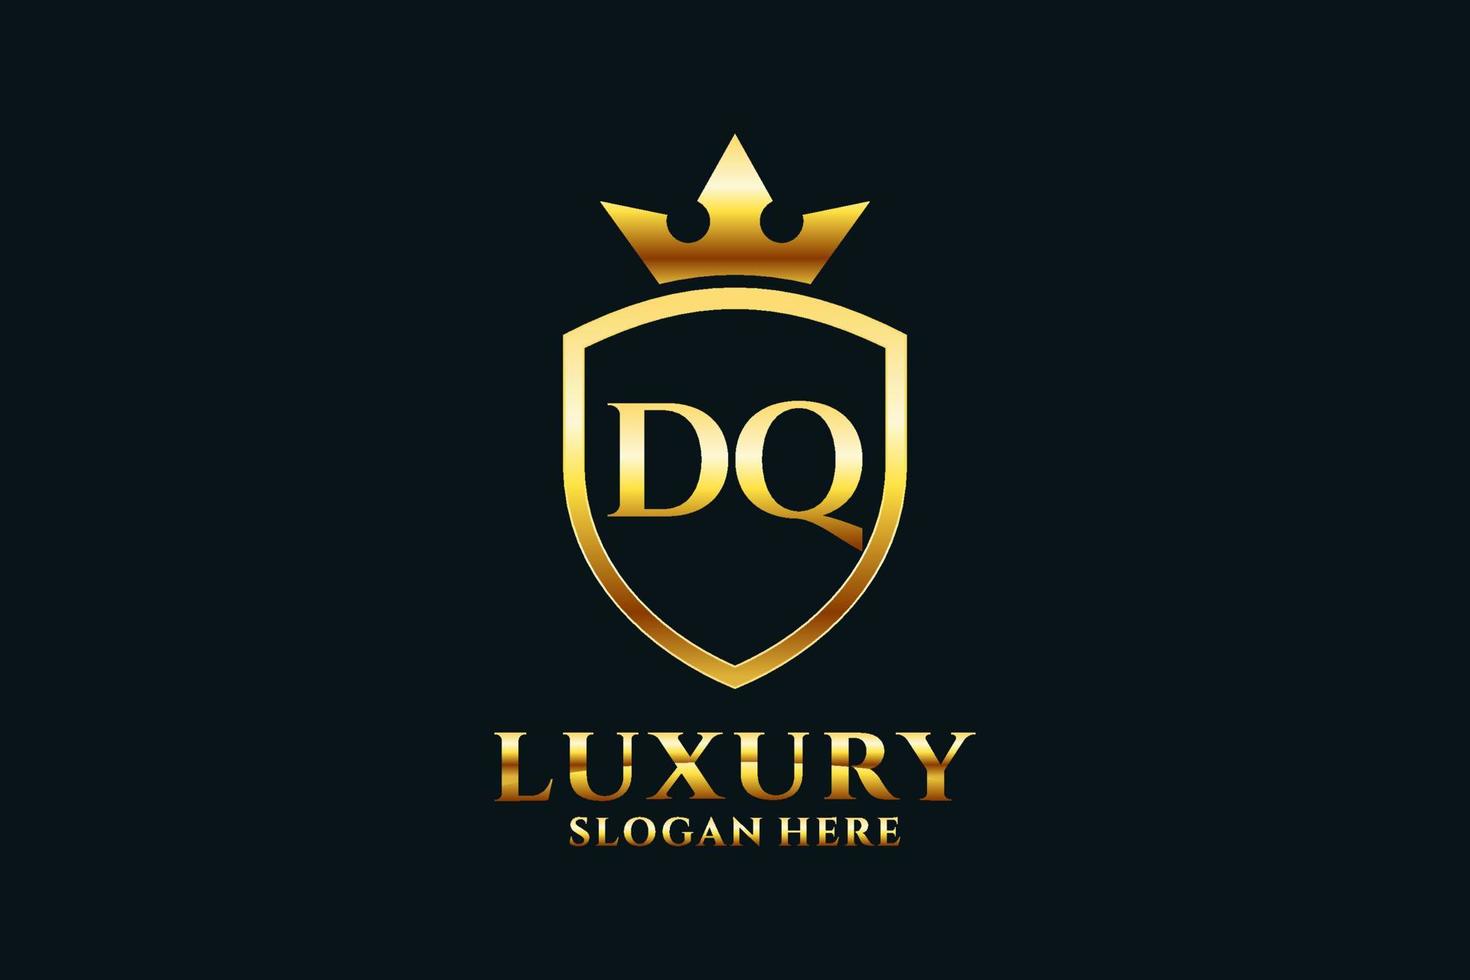 logo monogramme de luxe élégant initial dq ou modèle de badge avec volutes et couronne royale - parfait pour les projets de marque de luxe vecteur